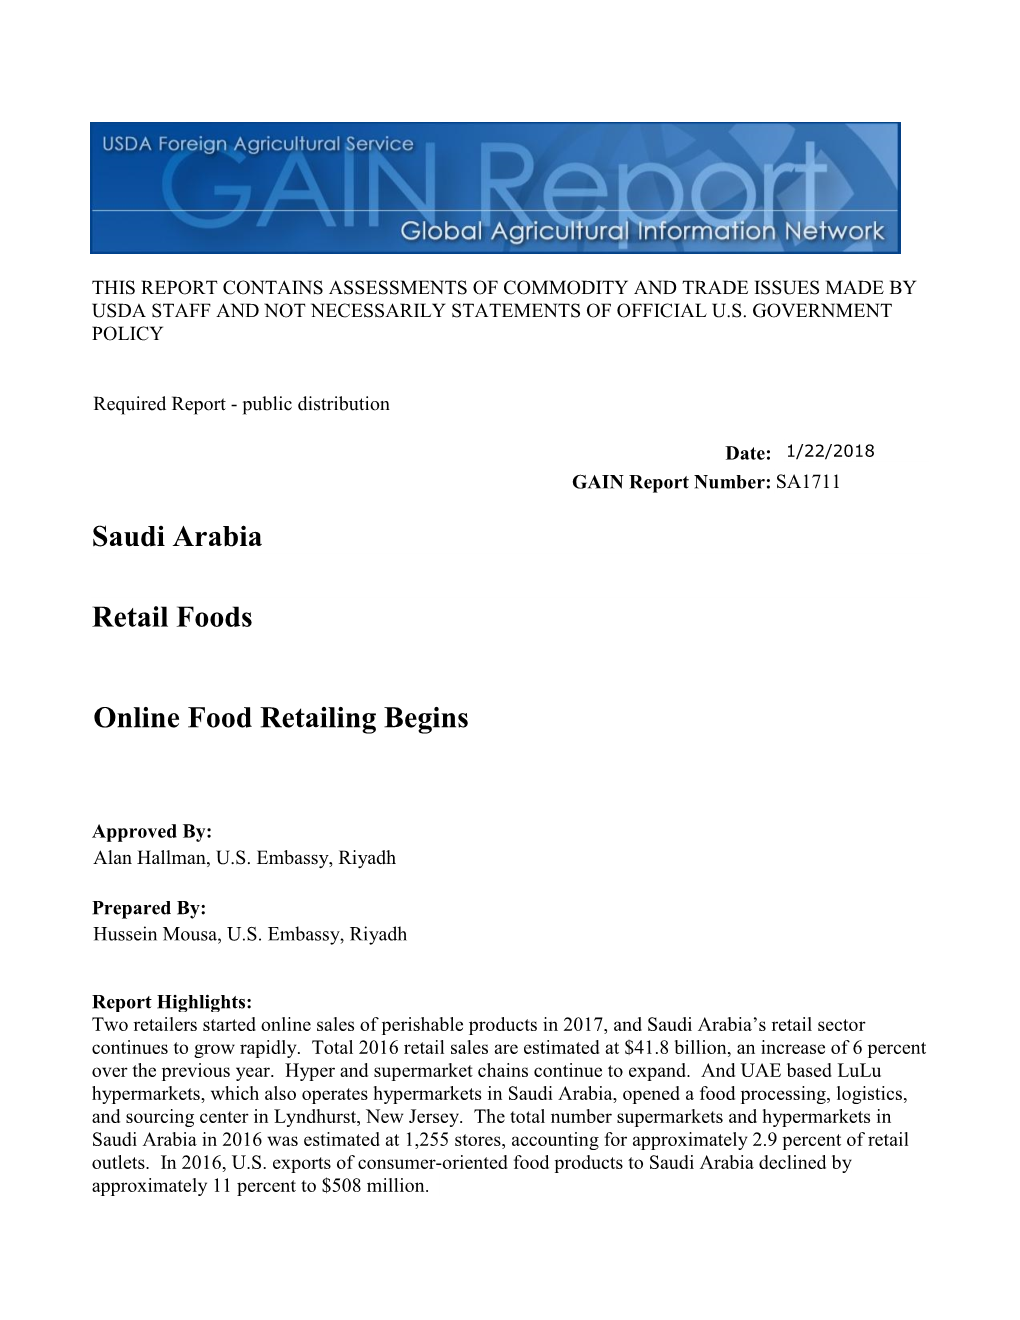 Saudi Arabia: Retail Foods